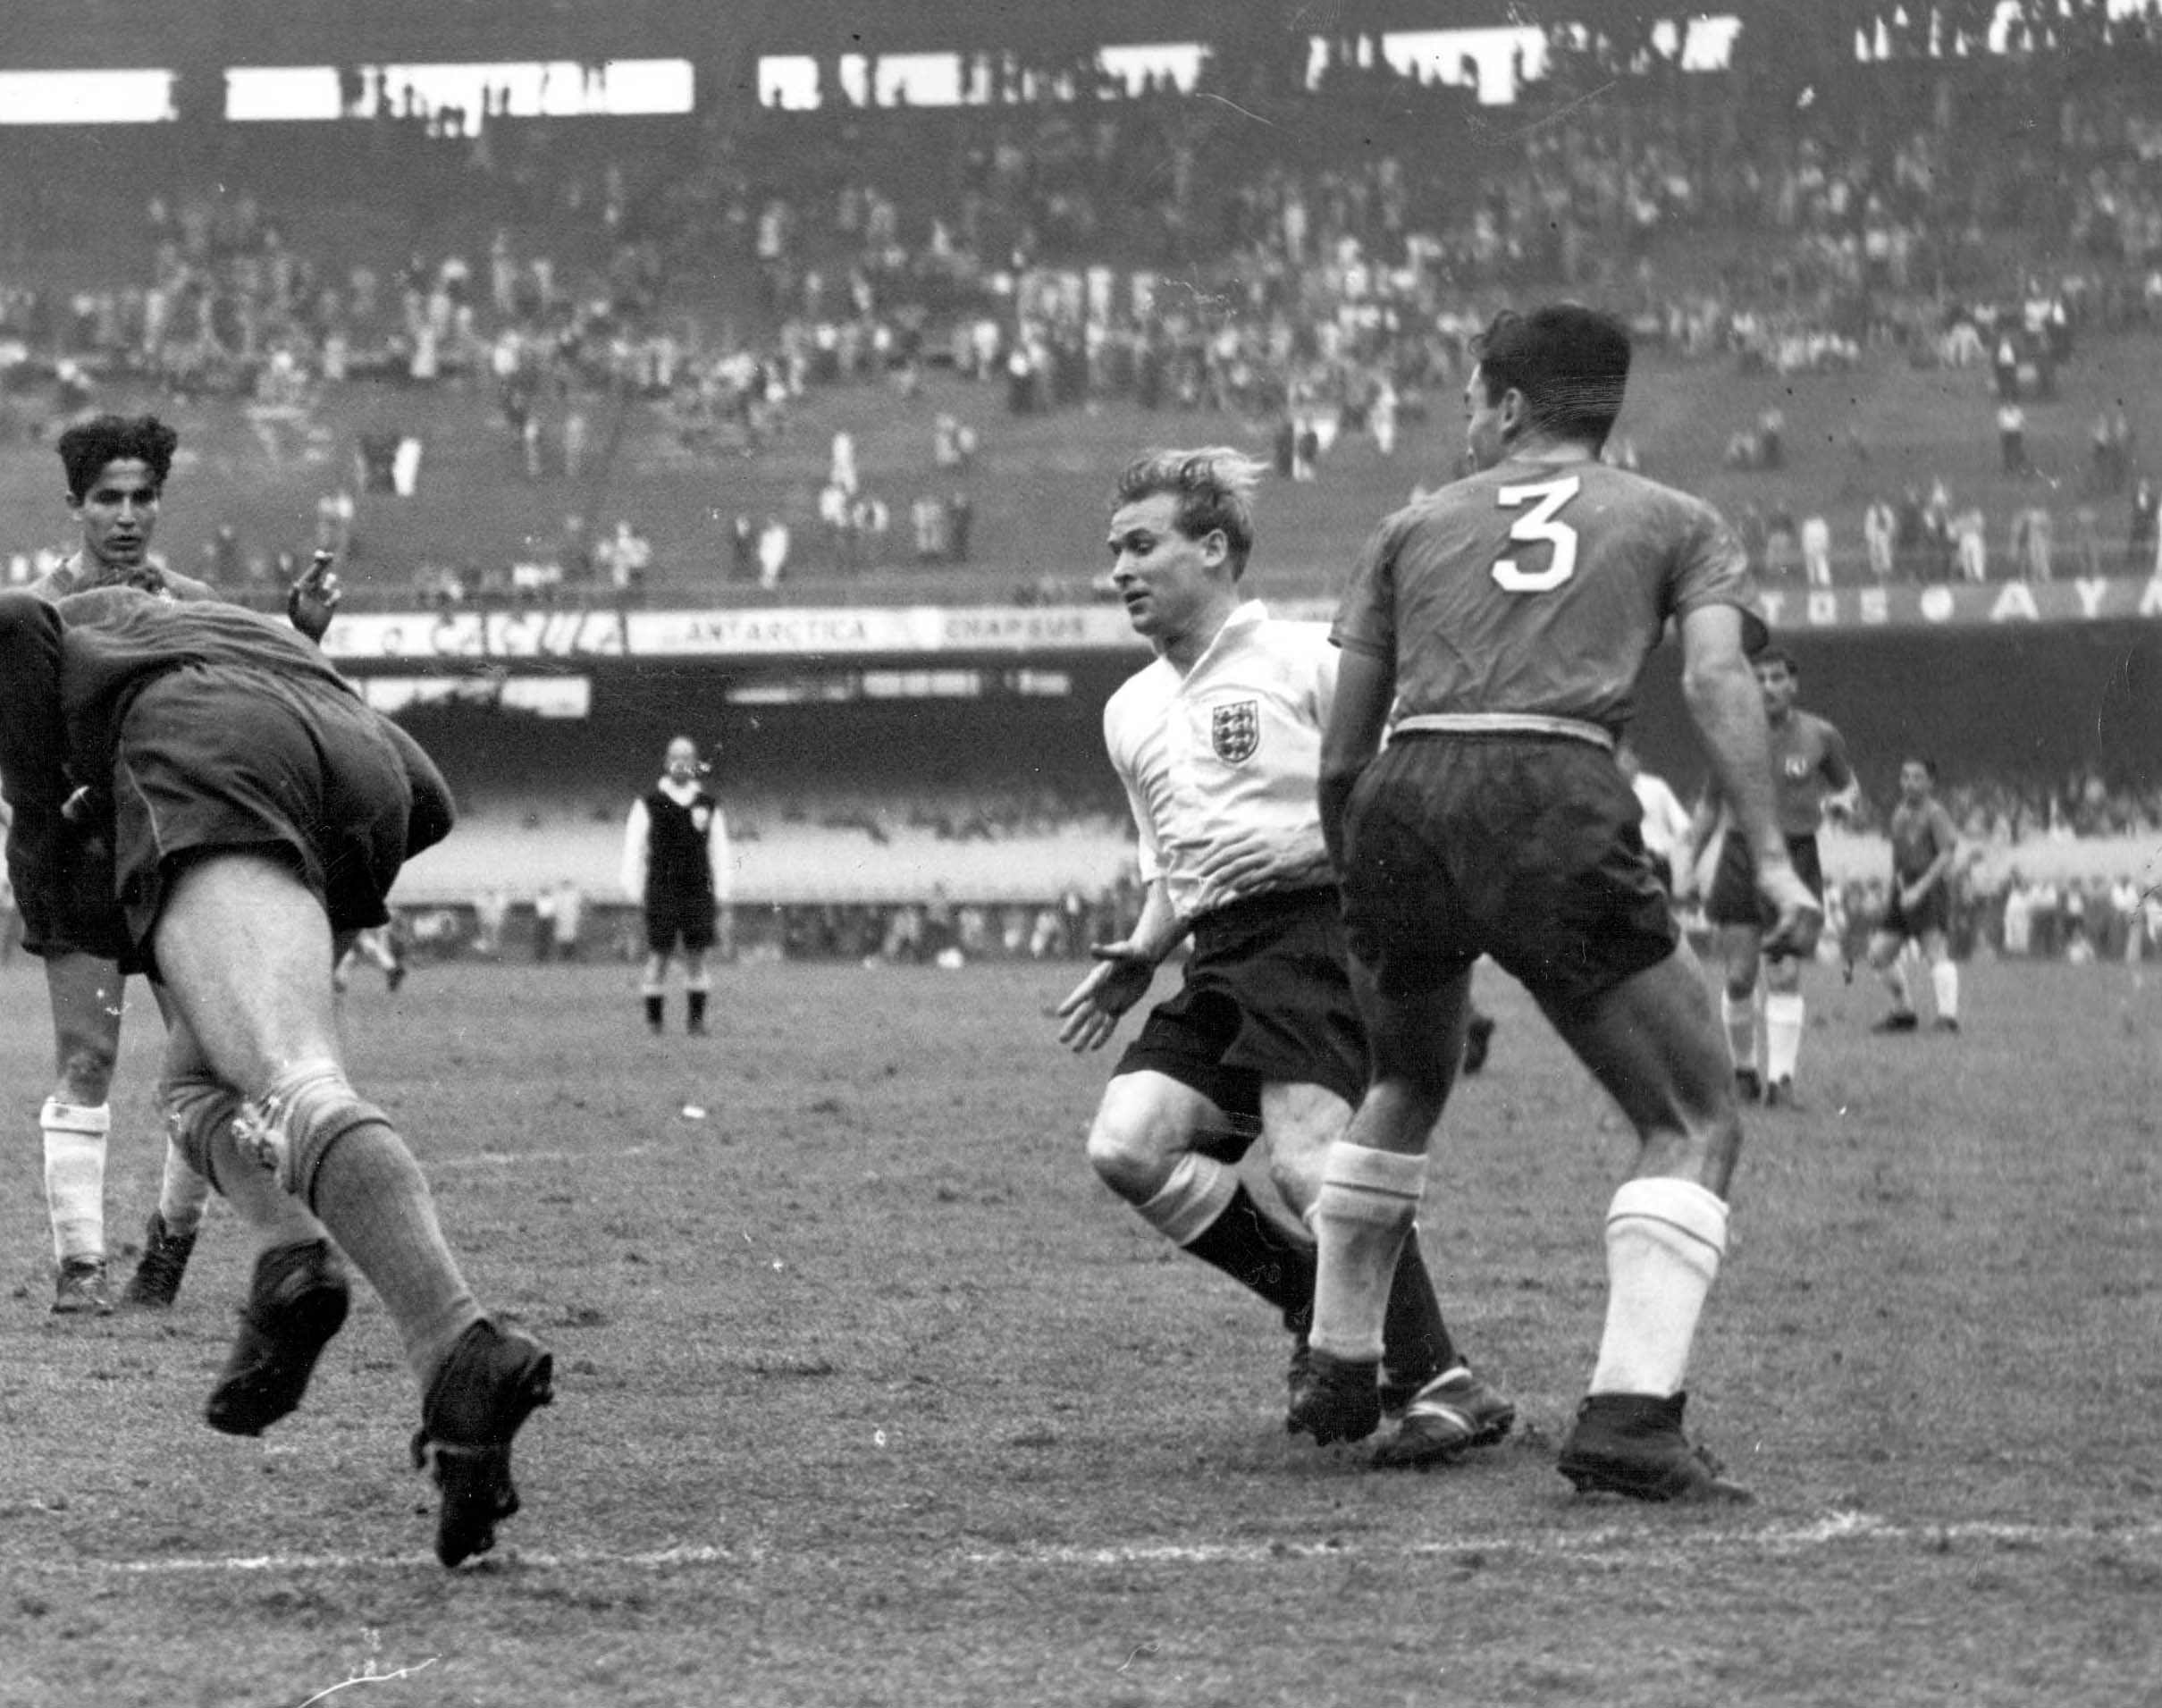 قصة كأس العالم 1950 أفراح قبل الكارثة